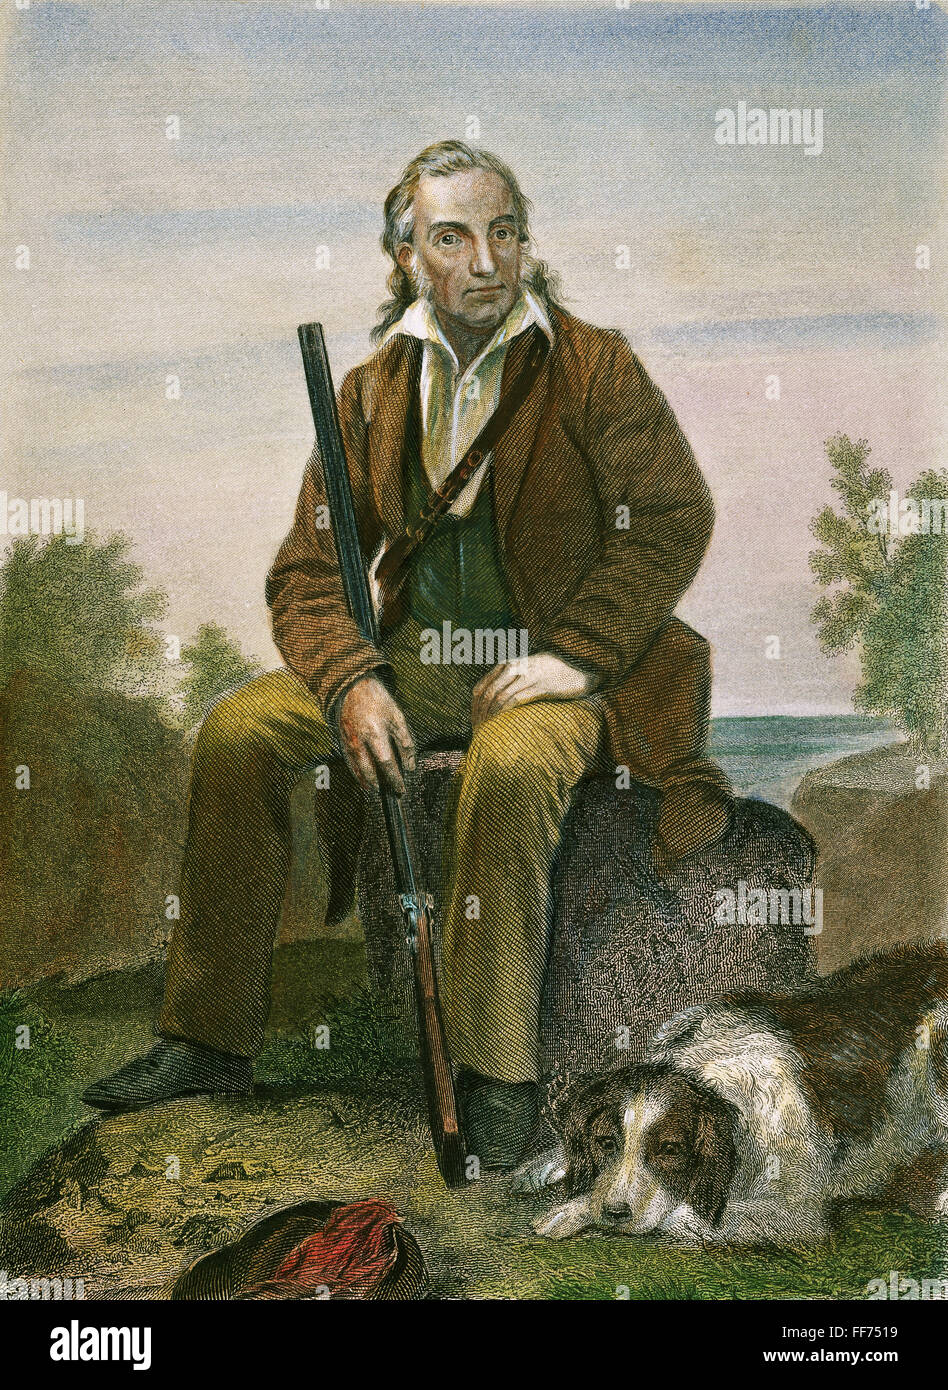 JOHN JAMES AUDUBON /n(1785-1851). Artiste et ornithologue américain. Gravure américaine, 19e siècle, d'après une peinture par Alonzo Chappel. Banque D'Images